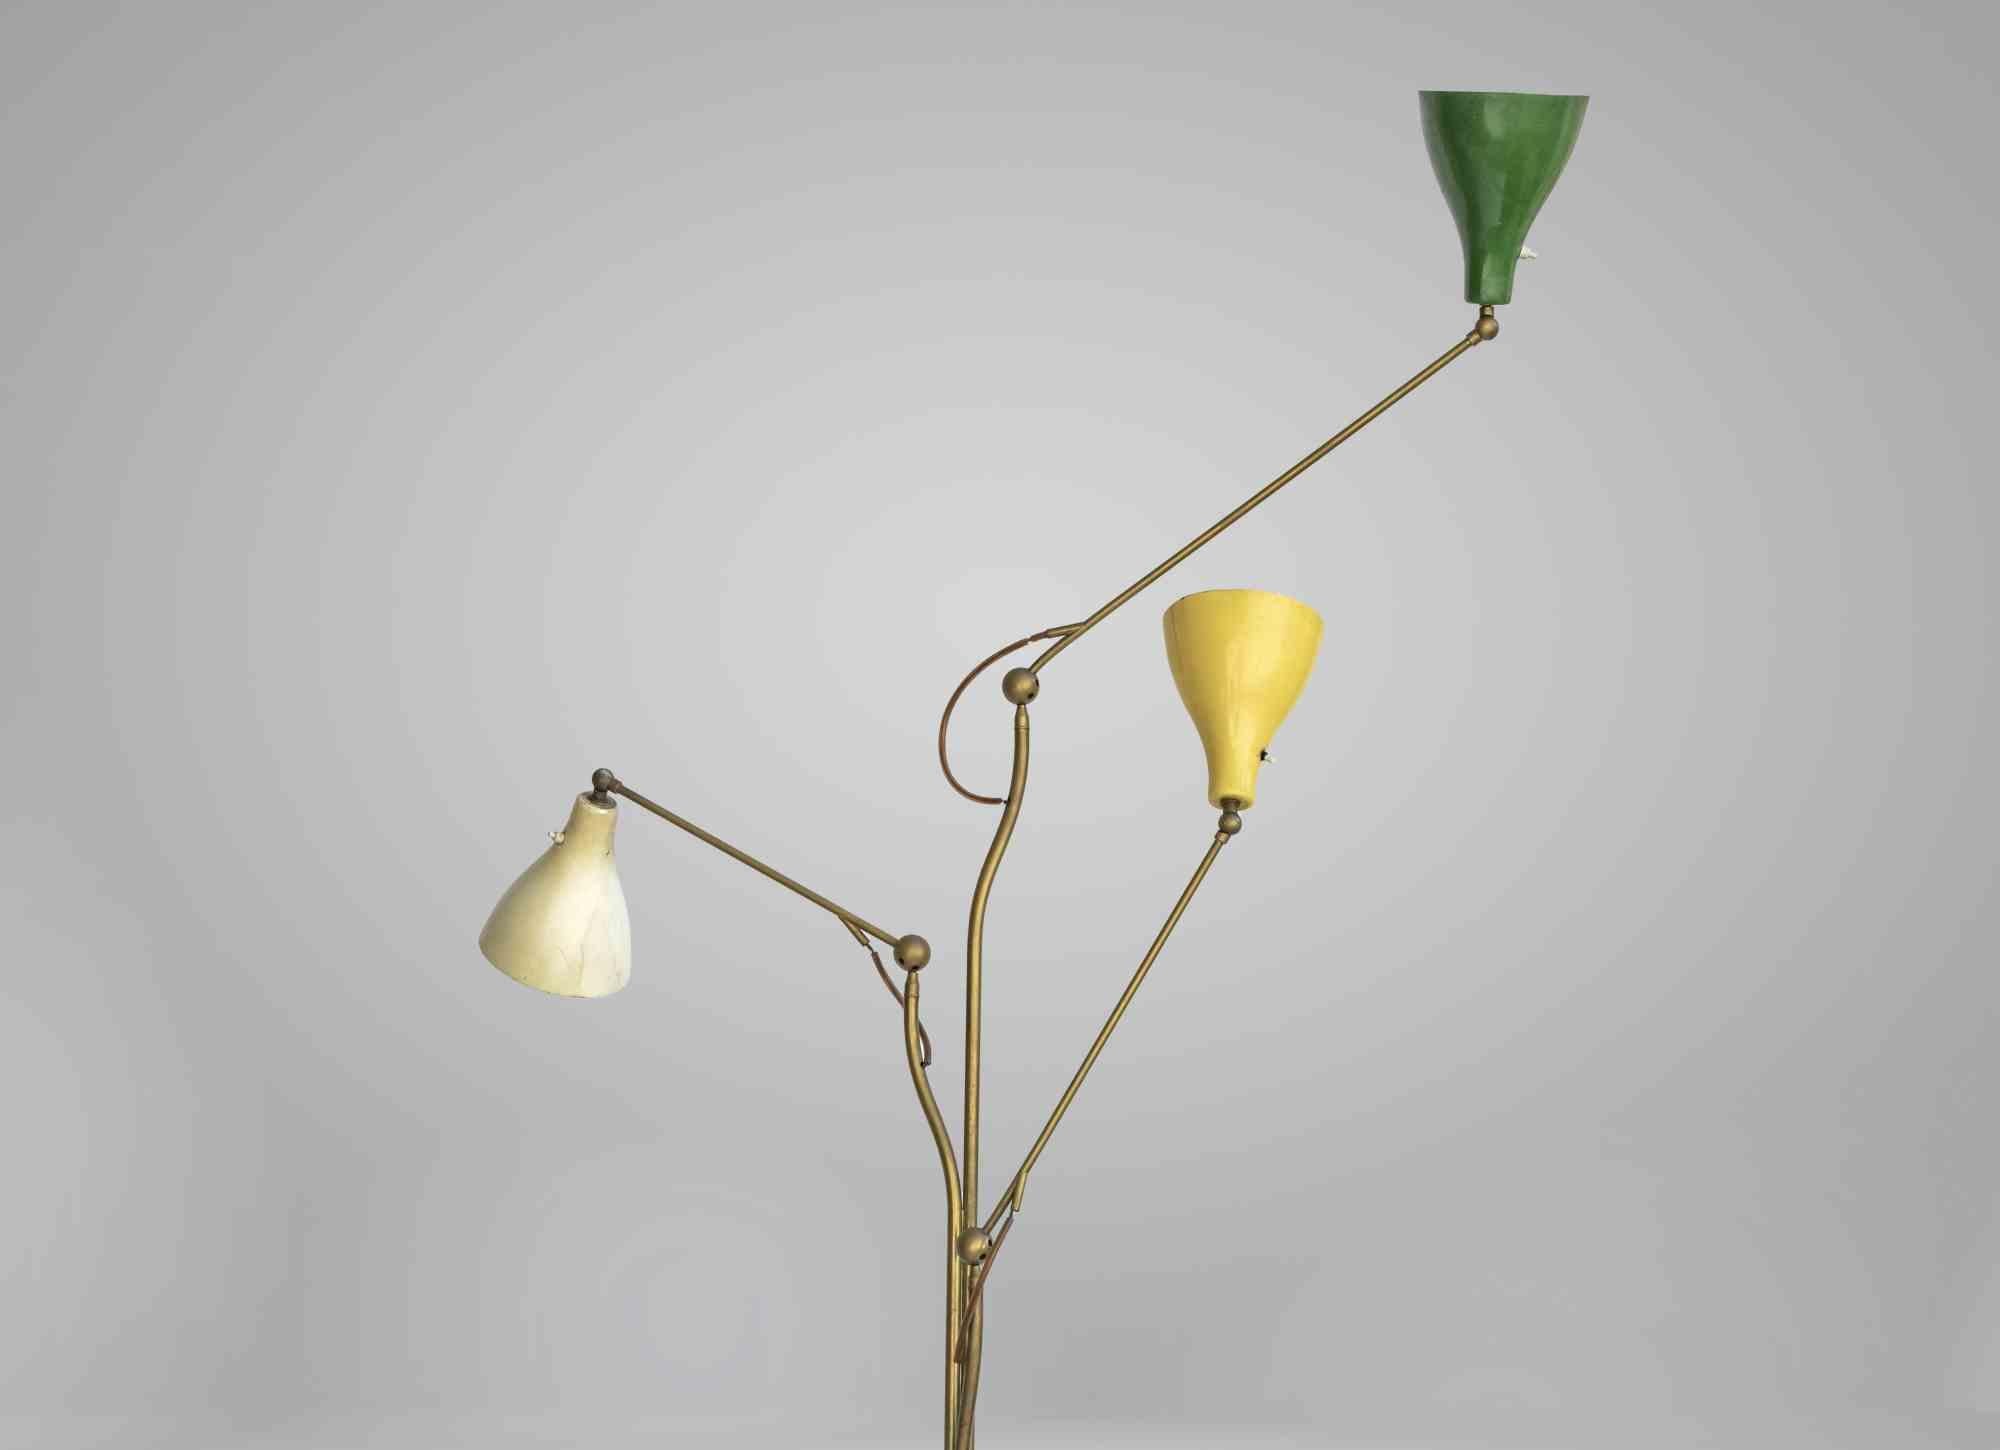 Top Rare lampadaire d'Angelo Lelli pour Arredoluce en 1949, base en métal laqué beige et laiton, trois bras réglables avec abat-jour laqué de différentes couleurs. Aucun remplacement/restauration, très bon état de fonctionnement.